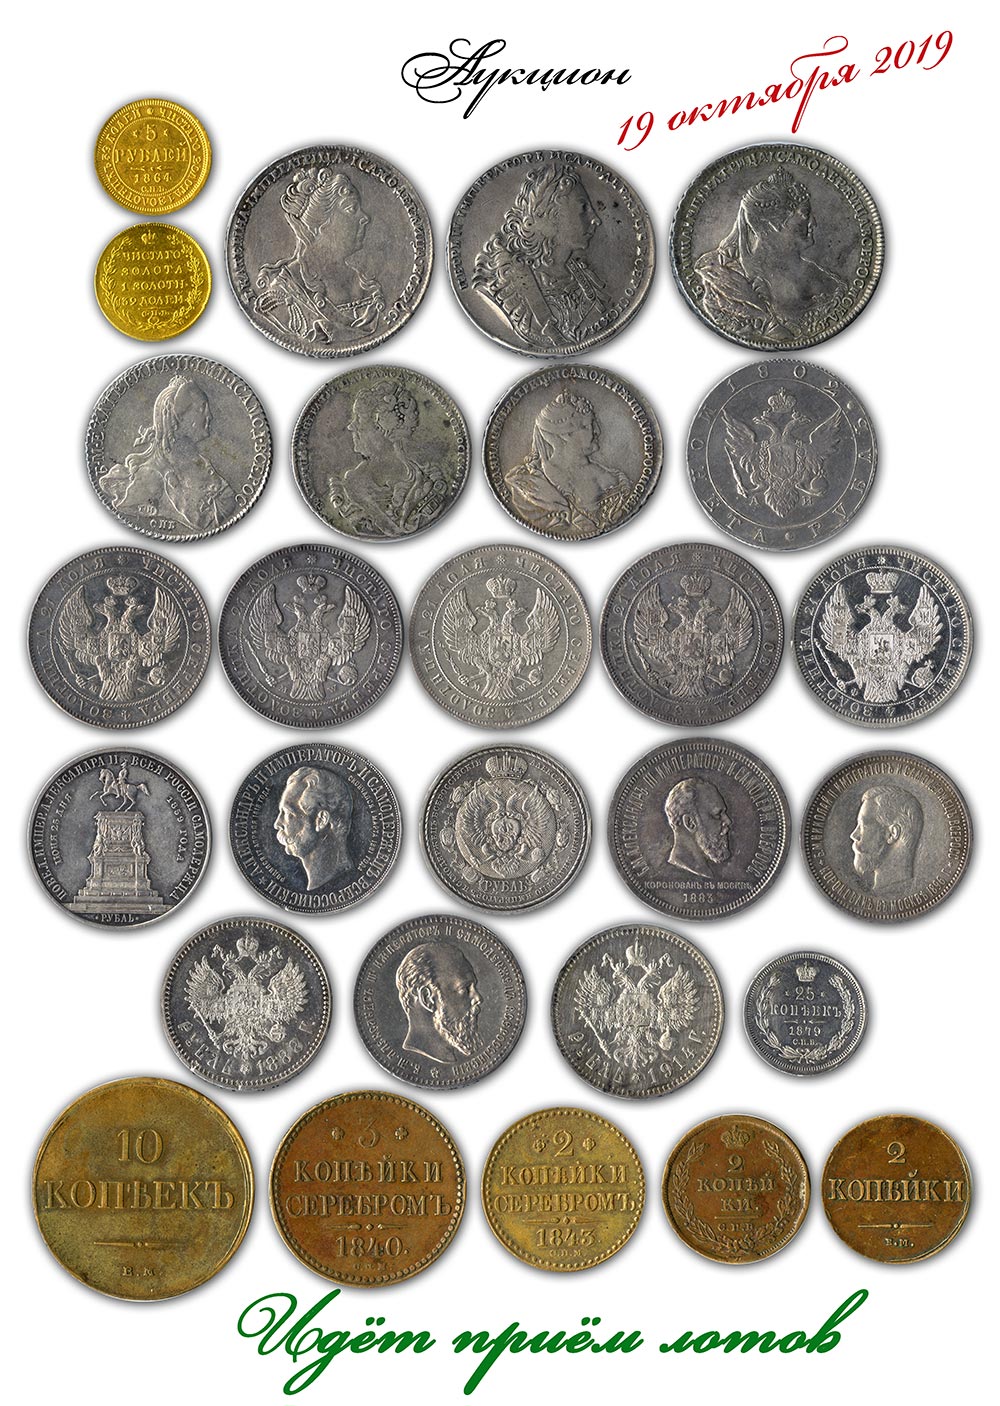 Аукционы монет в россии. Аукцион монет. Conros аукцион монет. Аукцион старинных монет. Редкие монеты и купюры.